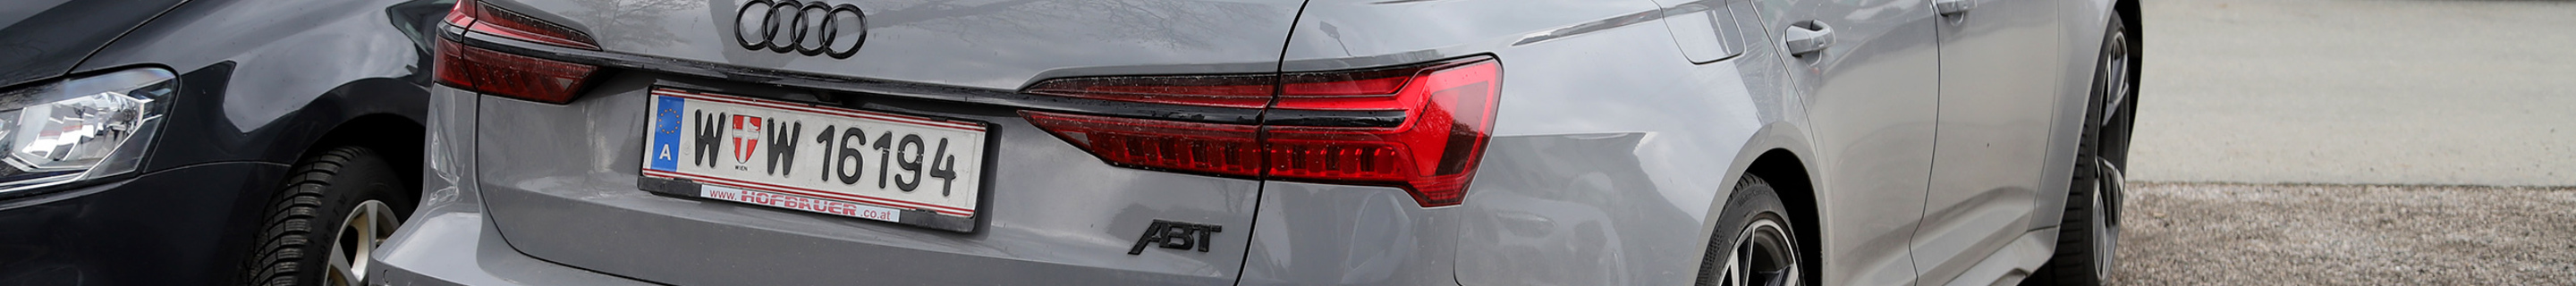 Audi ABT RS6 Avant C8